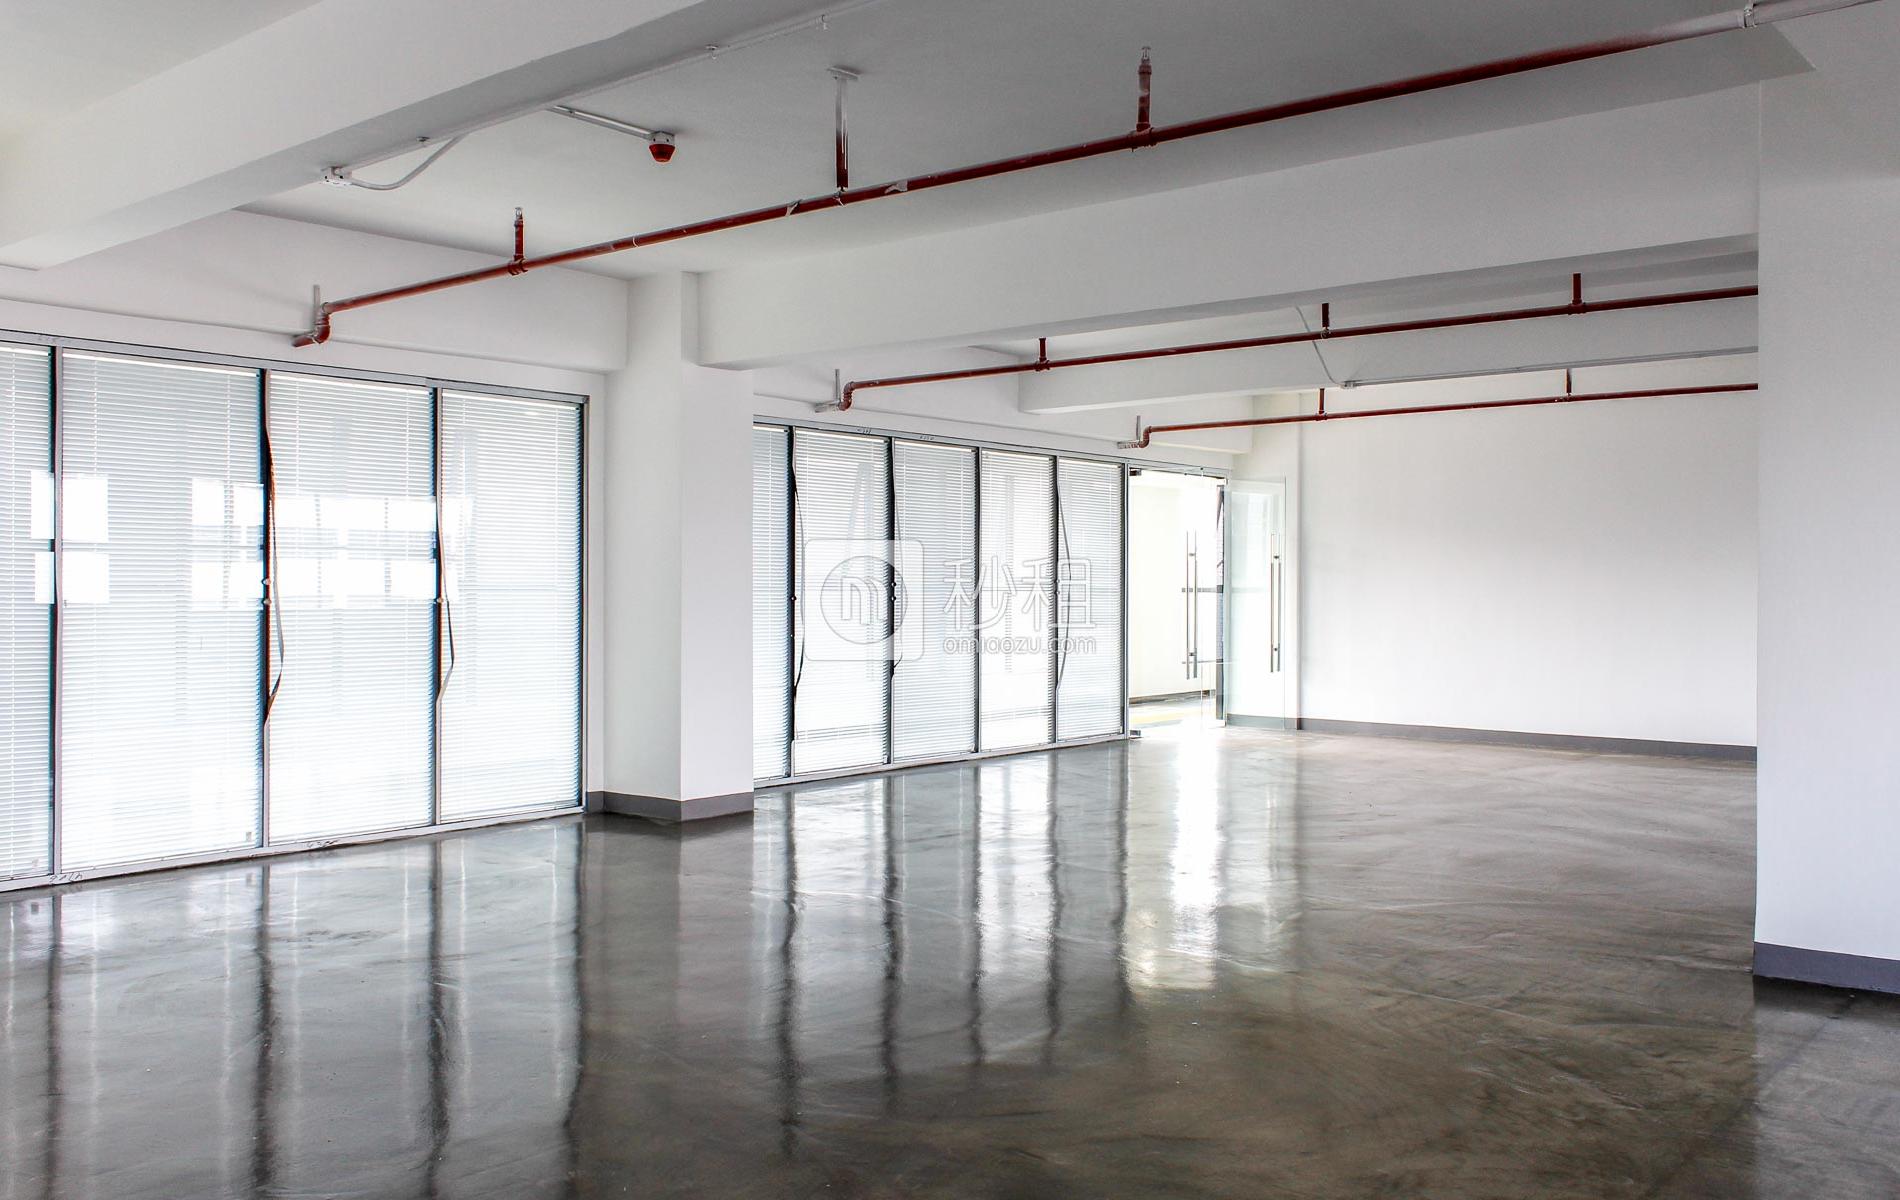 智慧谷创新园（坂田分园）写字楼出租300平米简装办公室68元/m².月